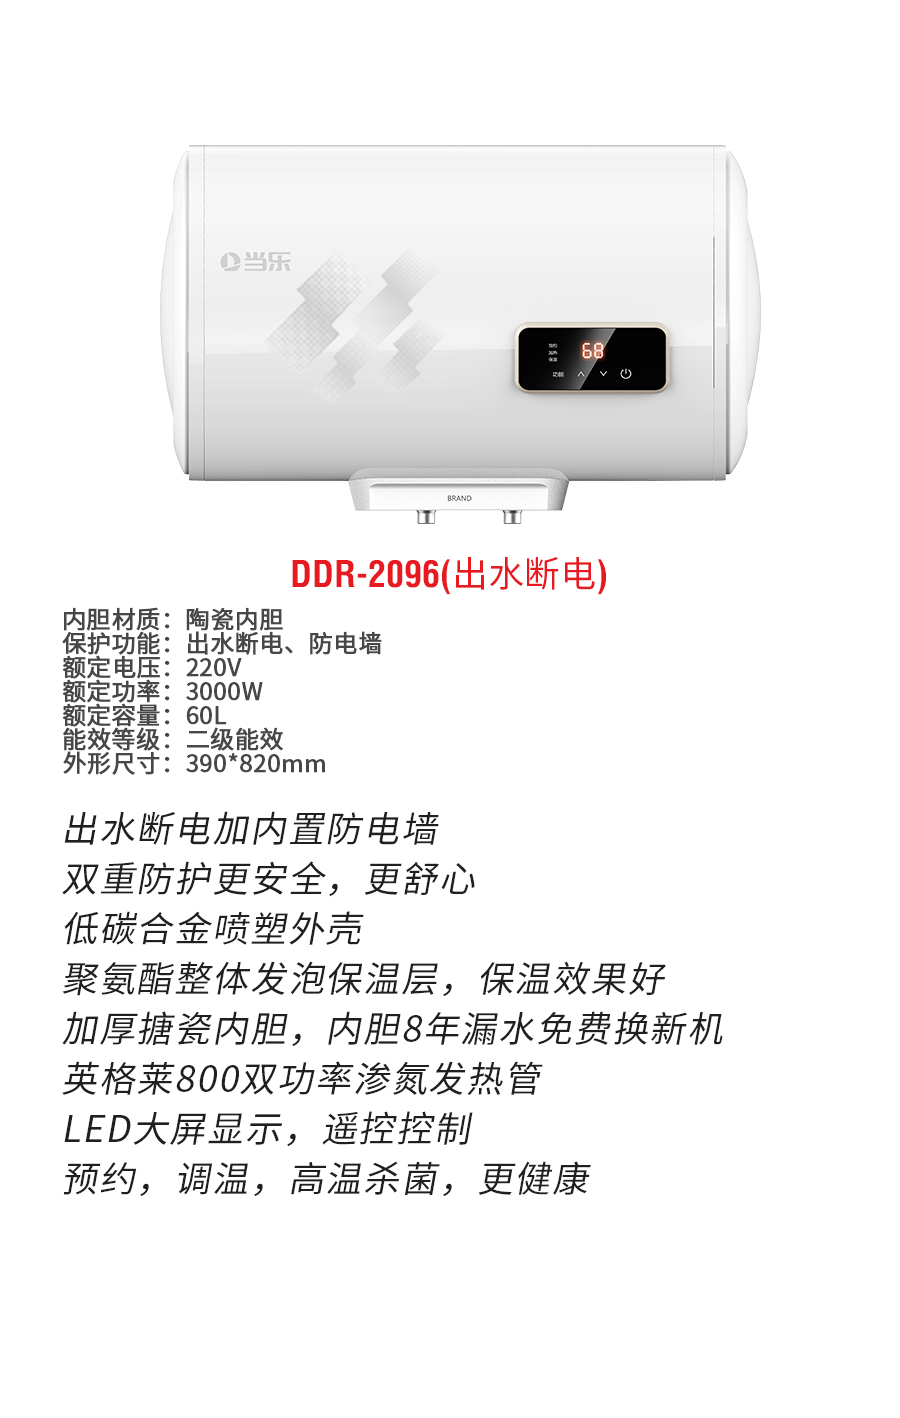 DDR-2096b.jpg